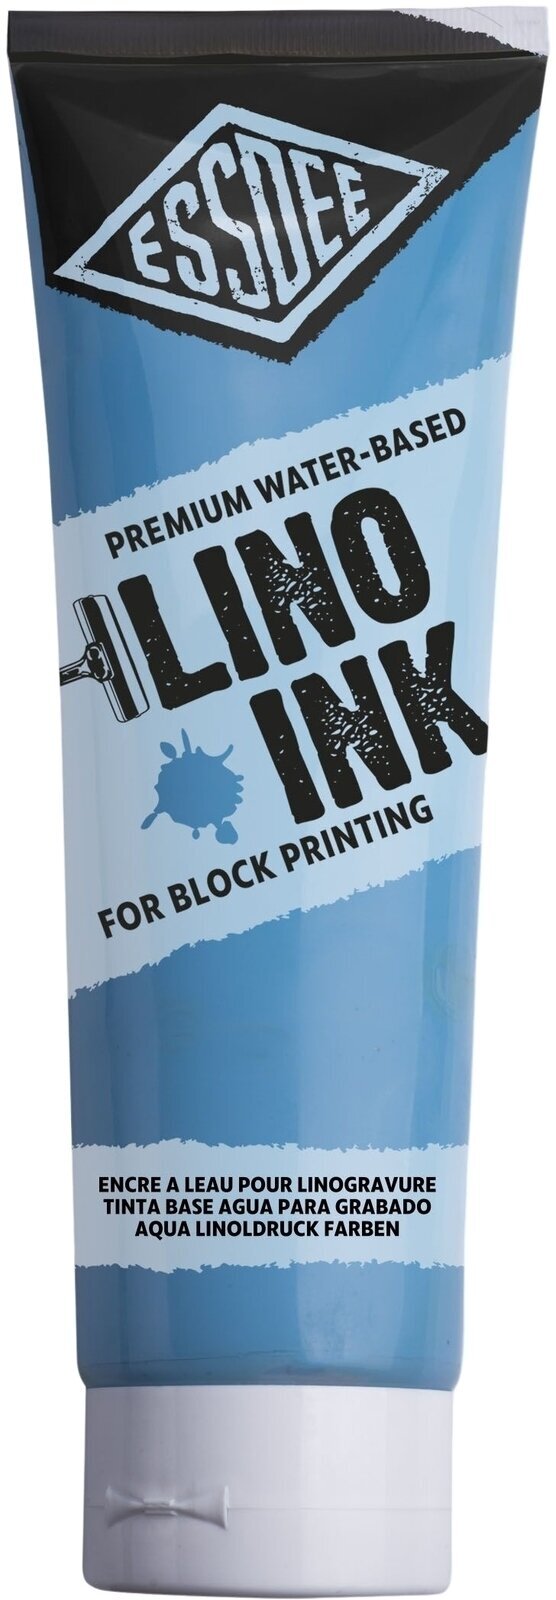 Peintures pour la linogravure Essdee Block Printing Ink Peintures pour la linogravure Sky Blue 300 ml